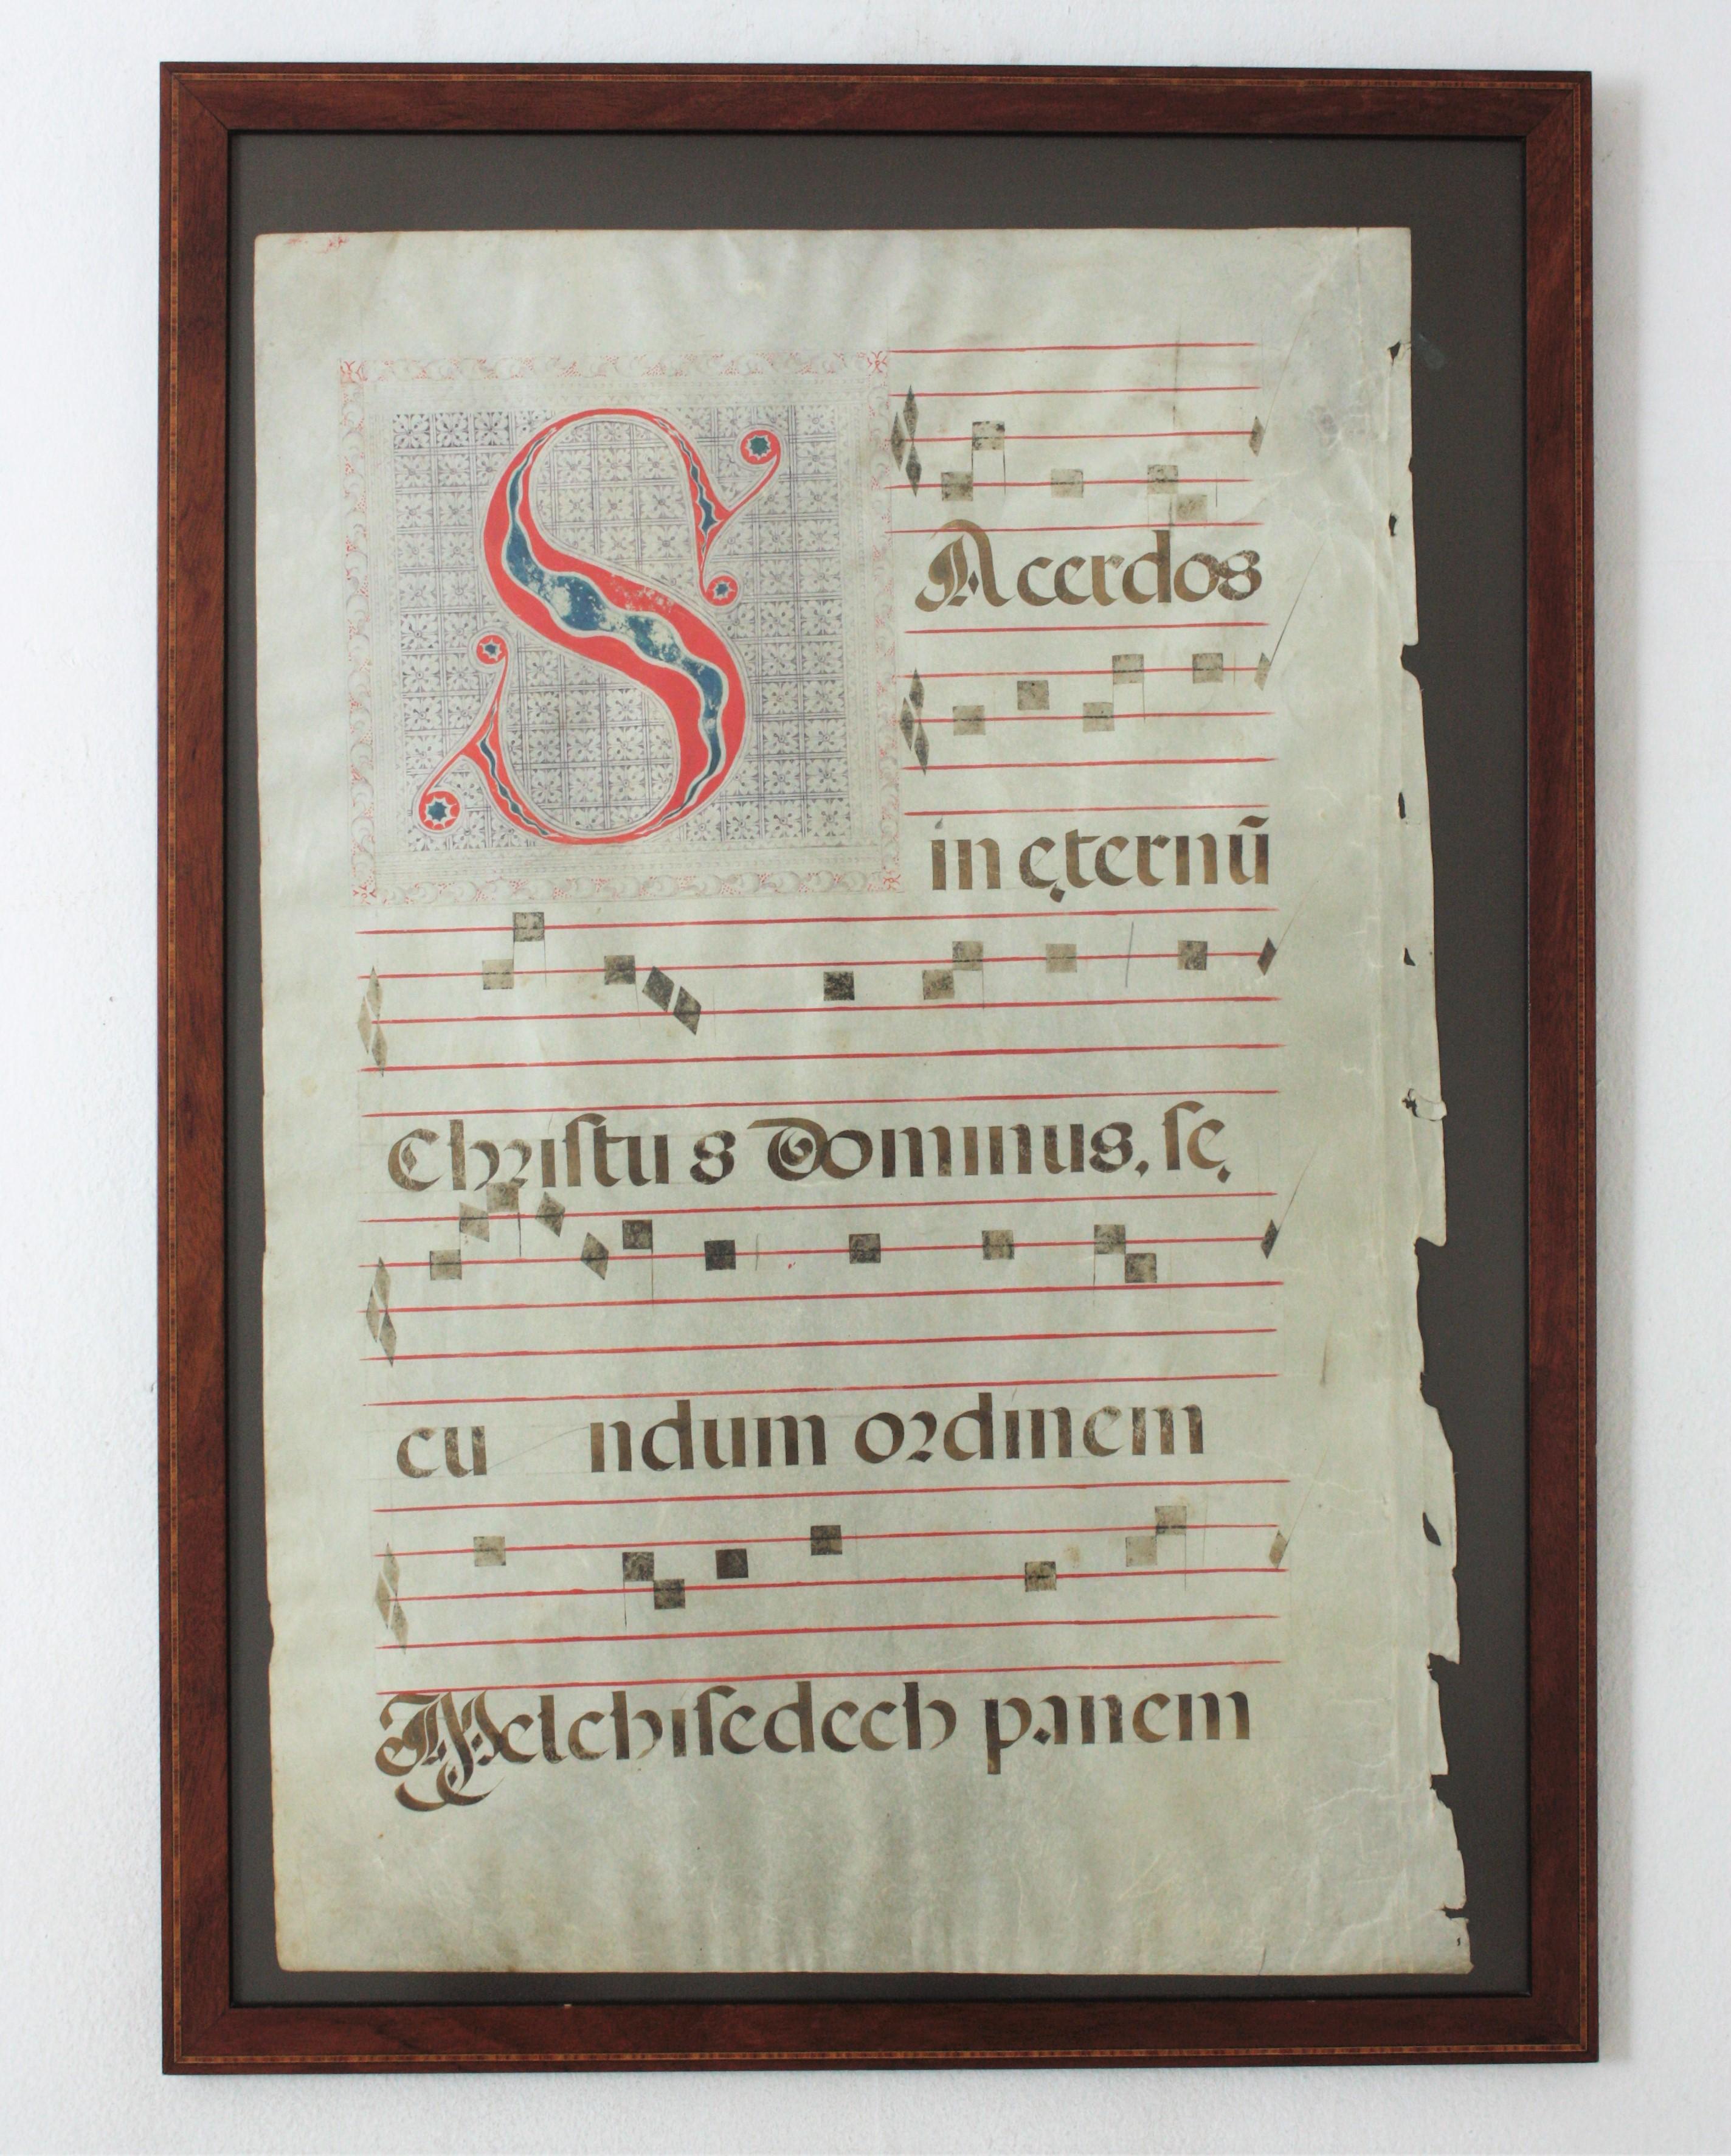 Grande feuille manuscrite avec chant grégorien sur parchemin
Livre de composition de chant grégorien 